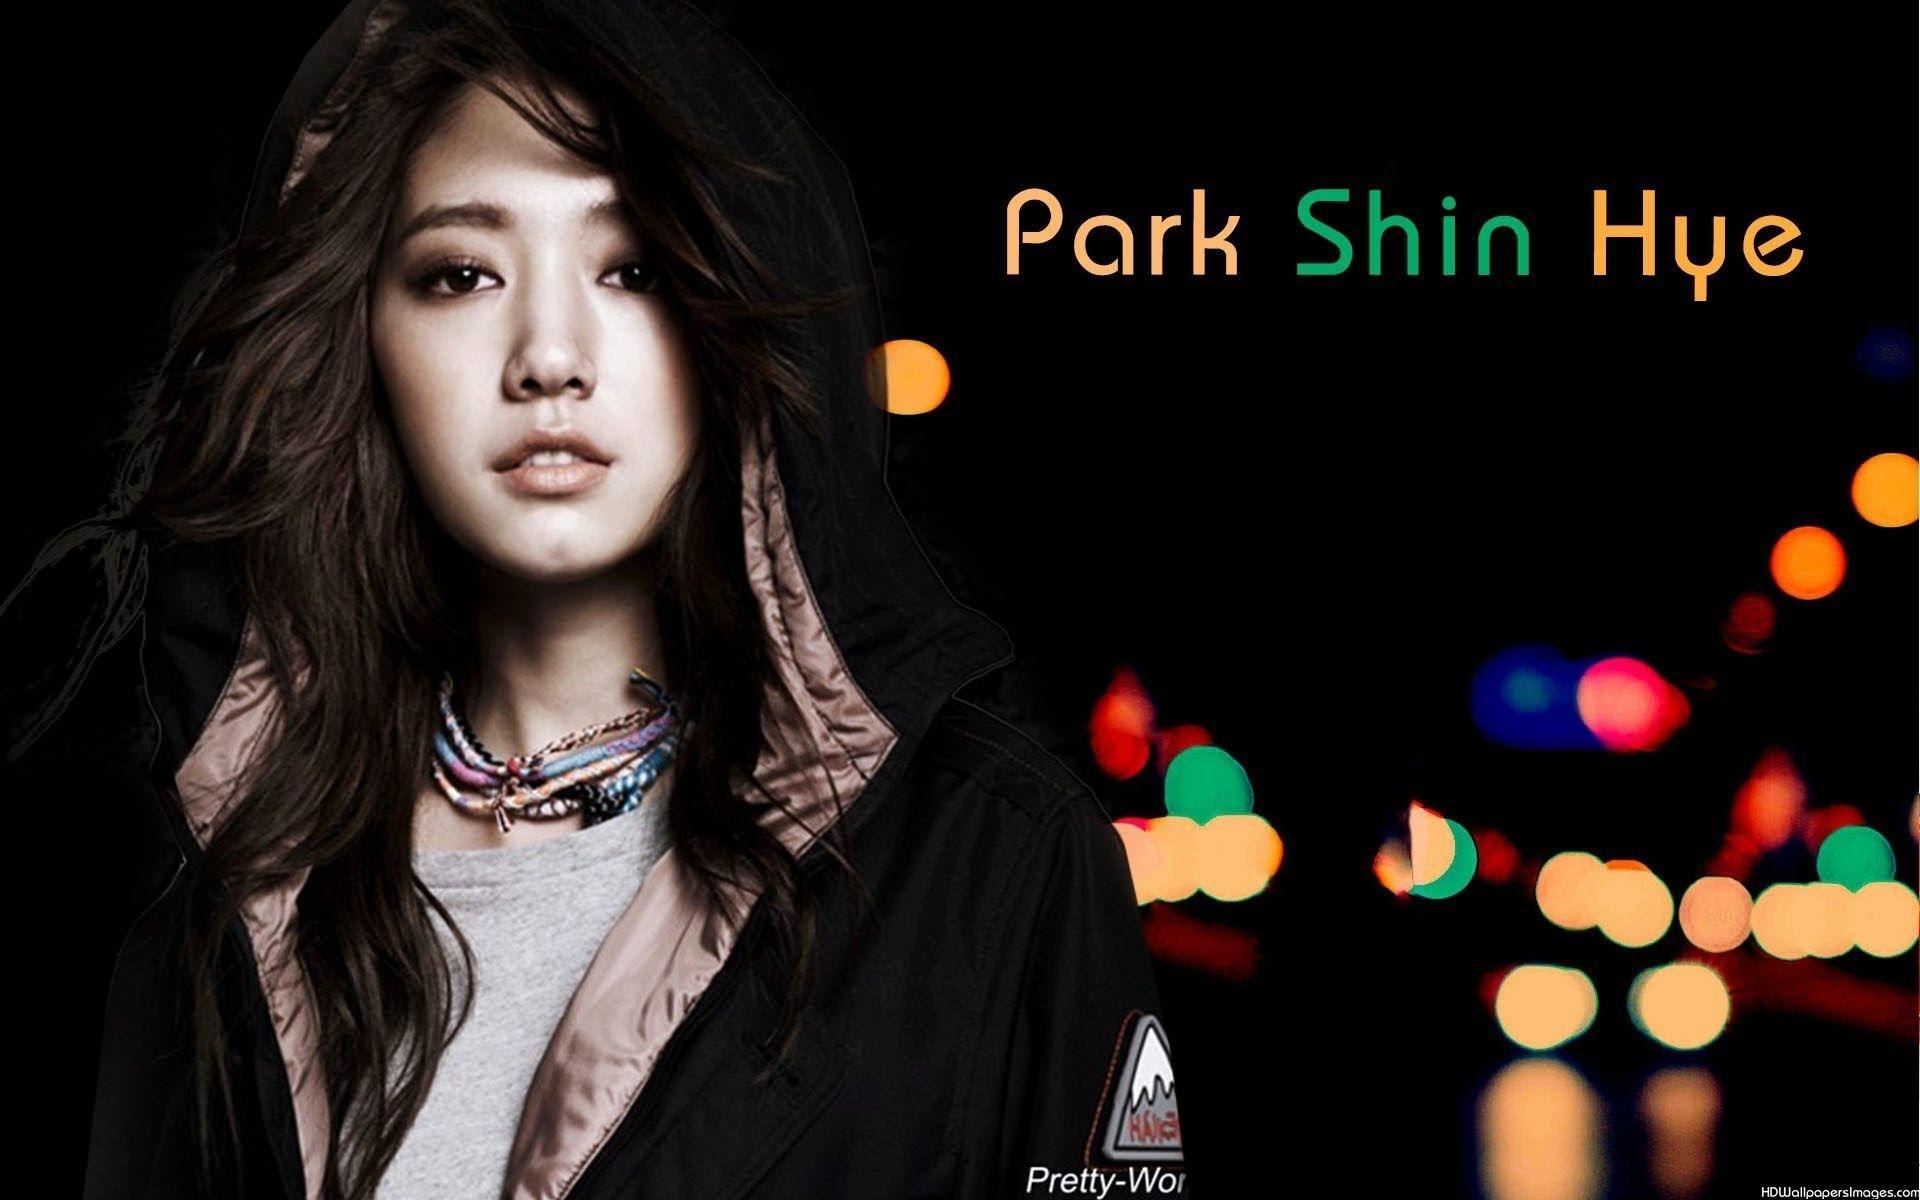 Park Shin Hye Wallpaper, Park Shin Hye Wallpaper. Park Shin Hye